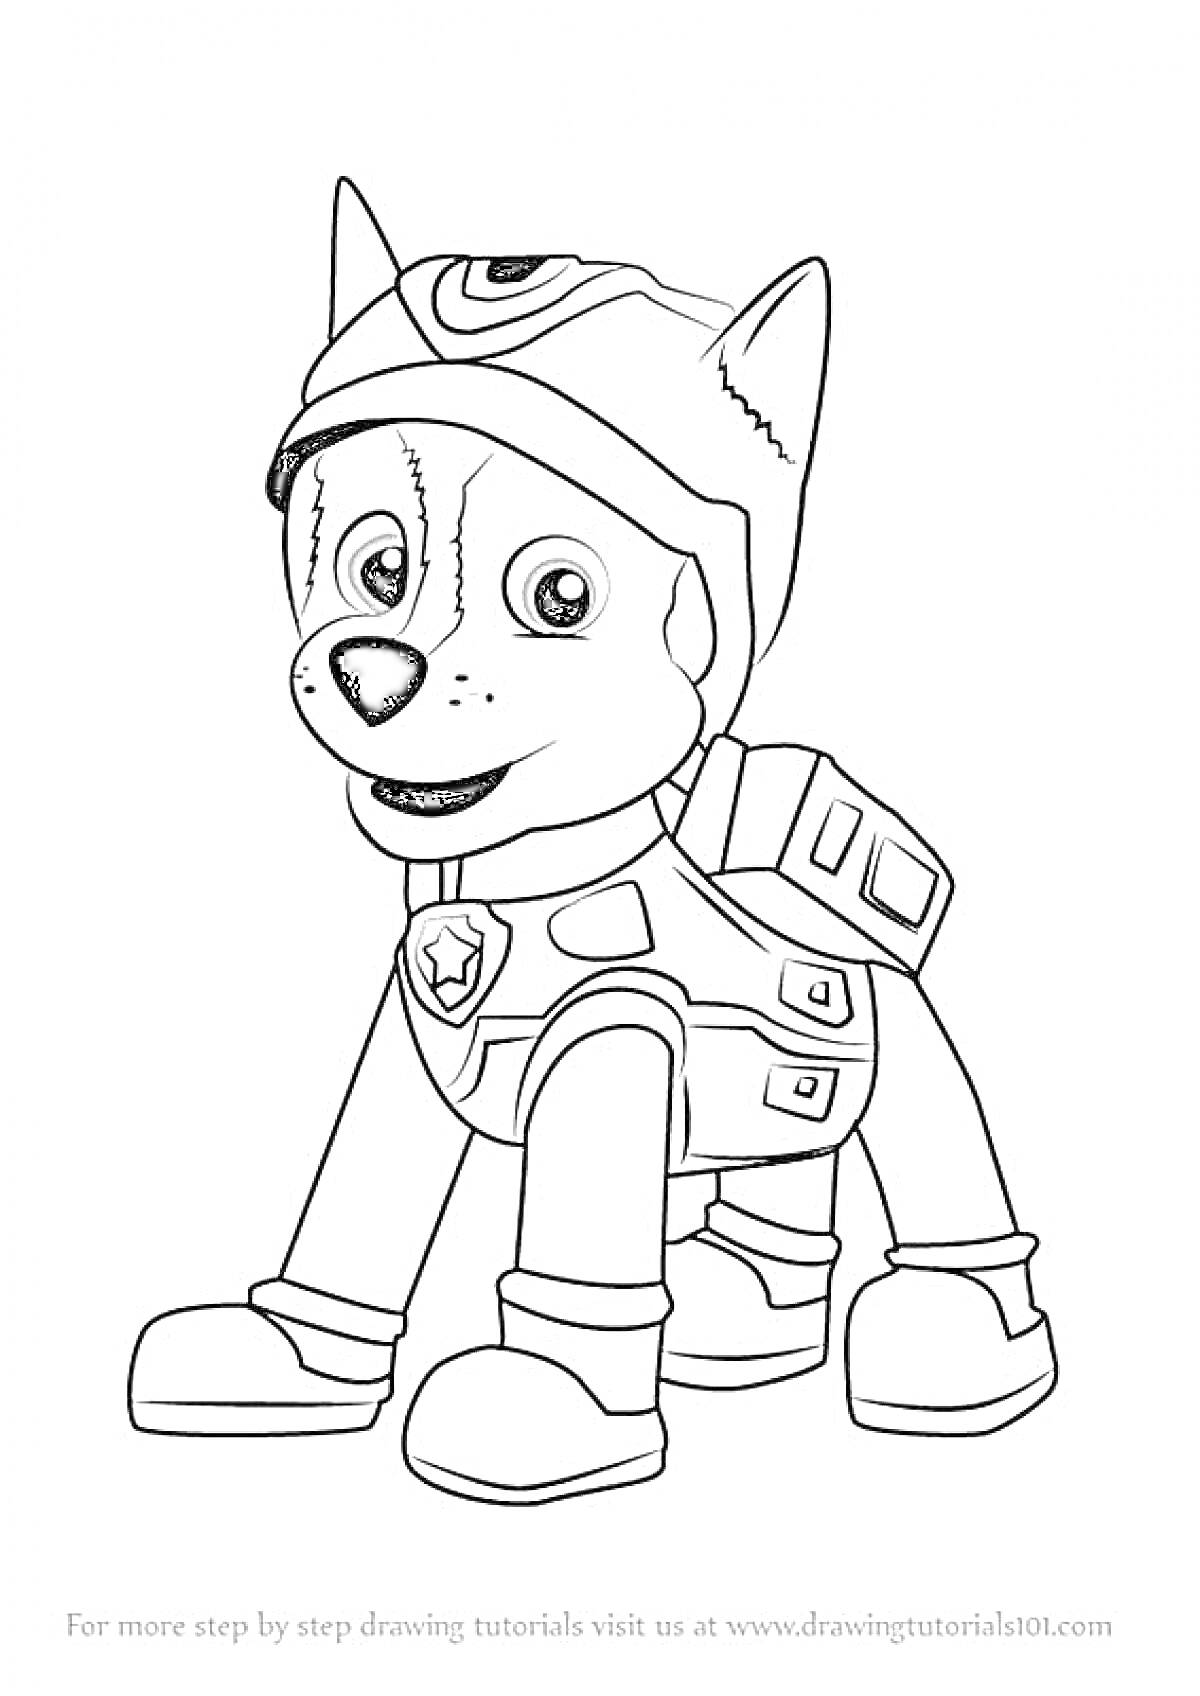 Раскраска Щенячий патруль: Гонщик в форме со значком и экипировкой